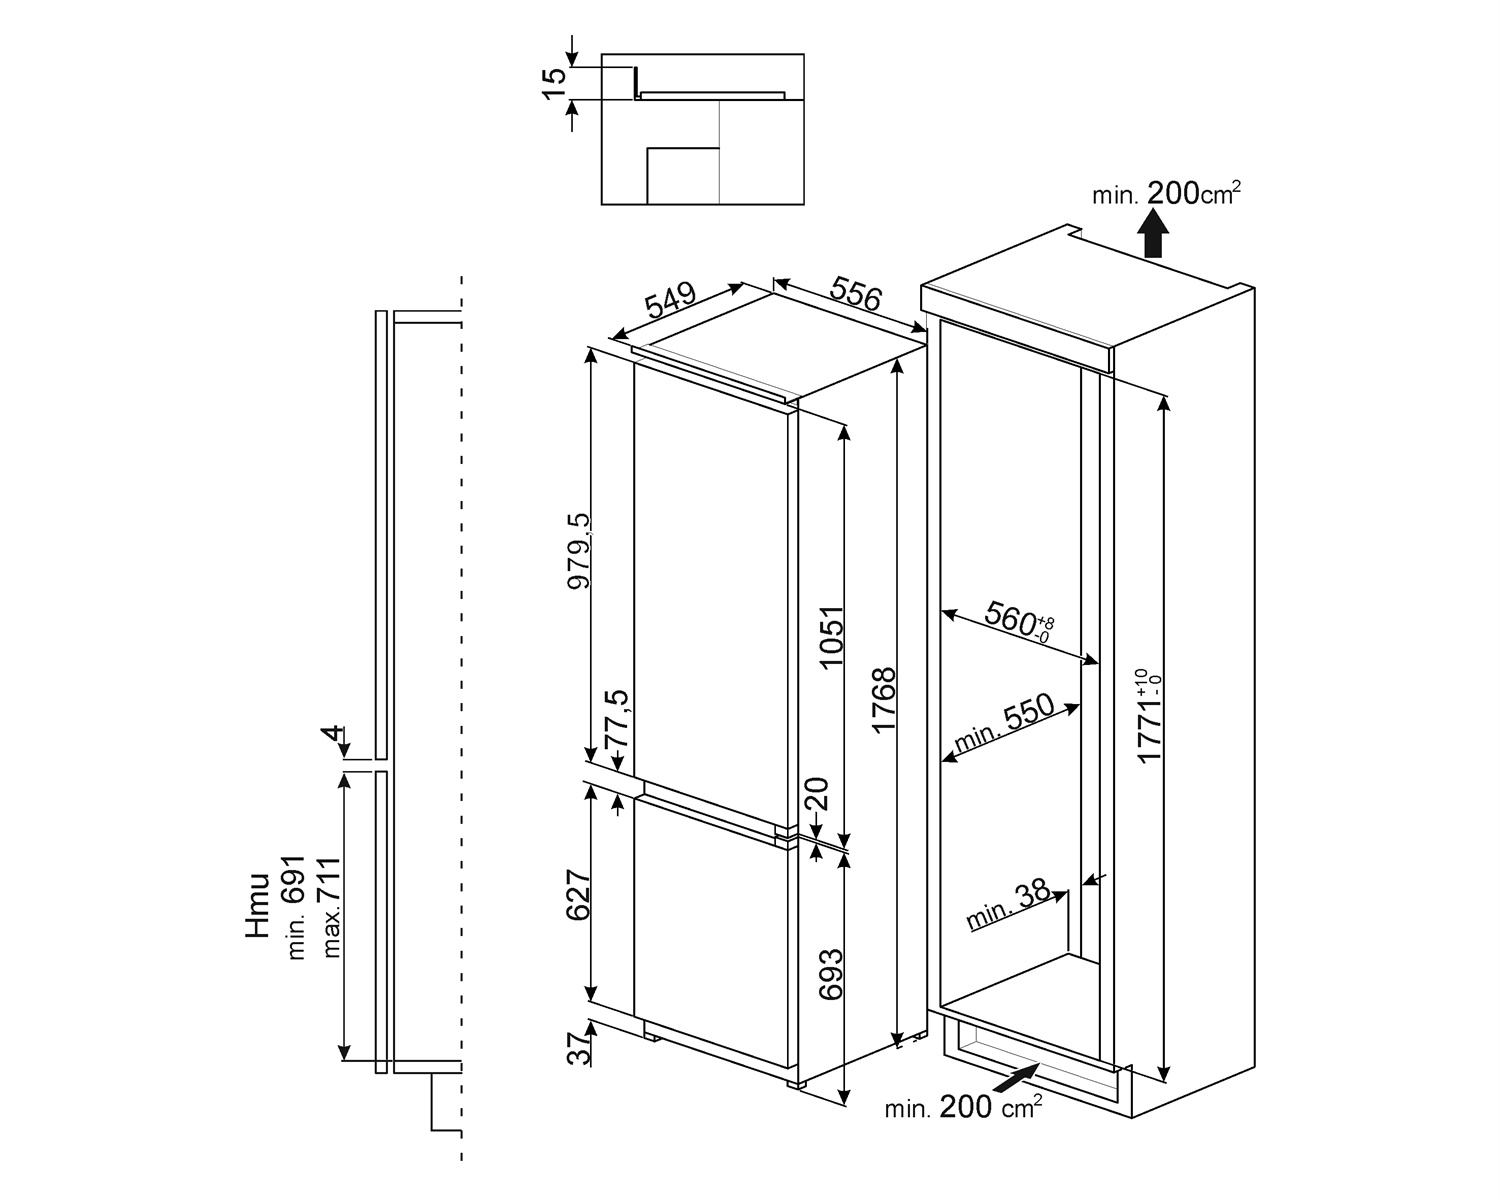 Maattekening SMEG koelkast inbouw CD7276NLD2P1